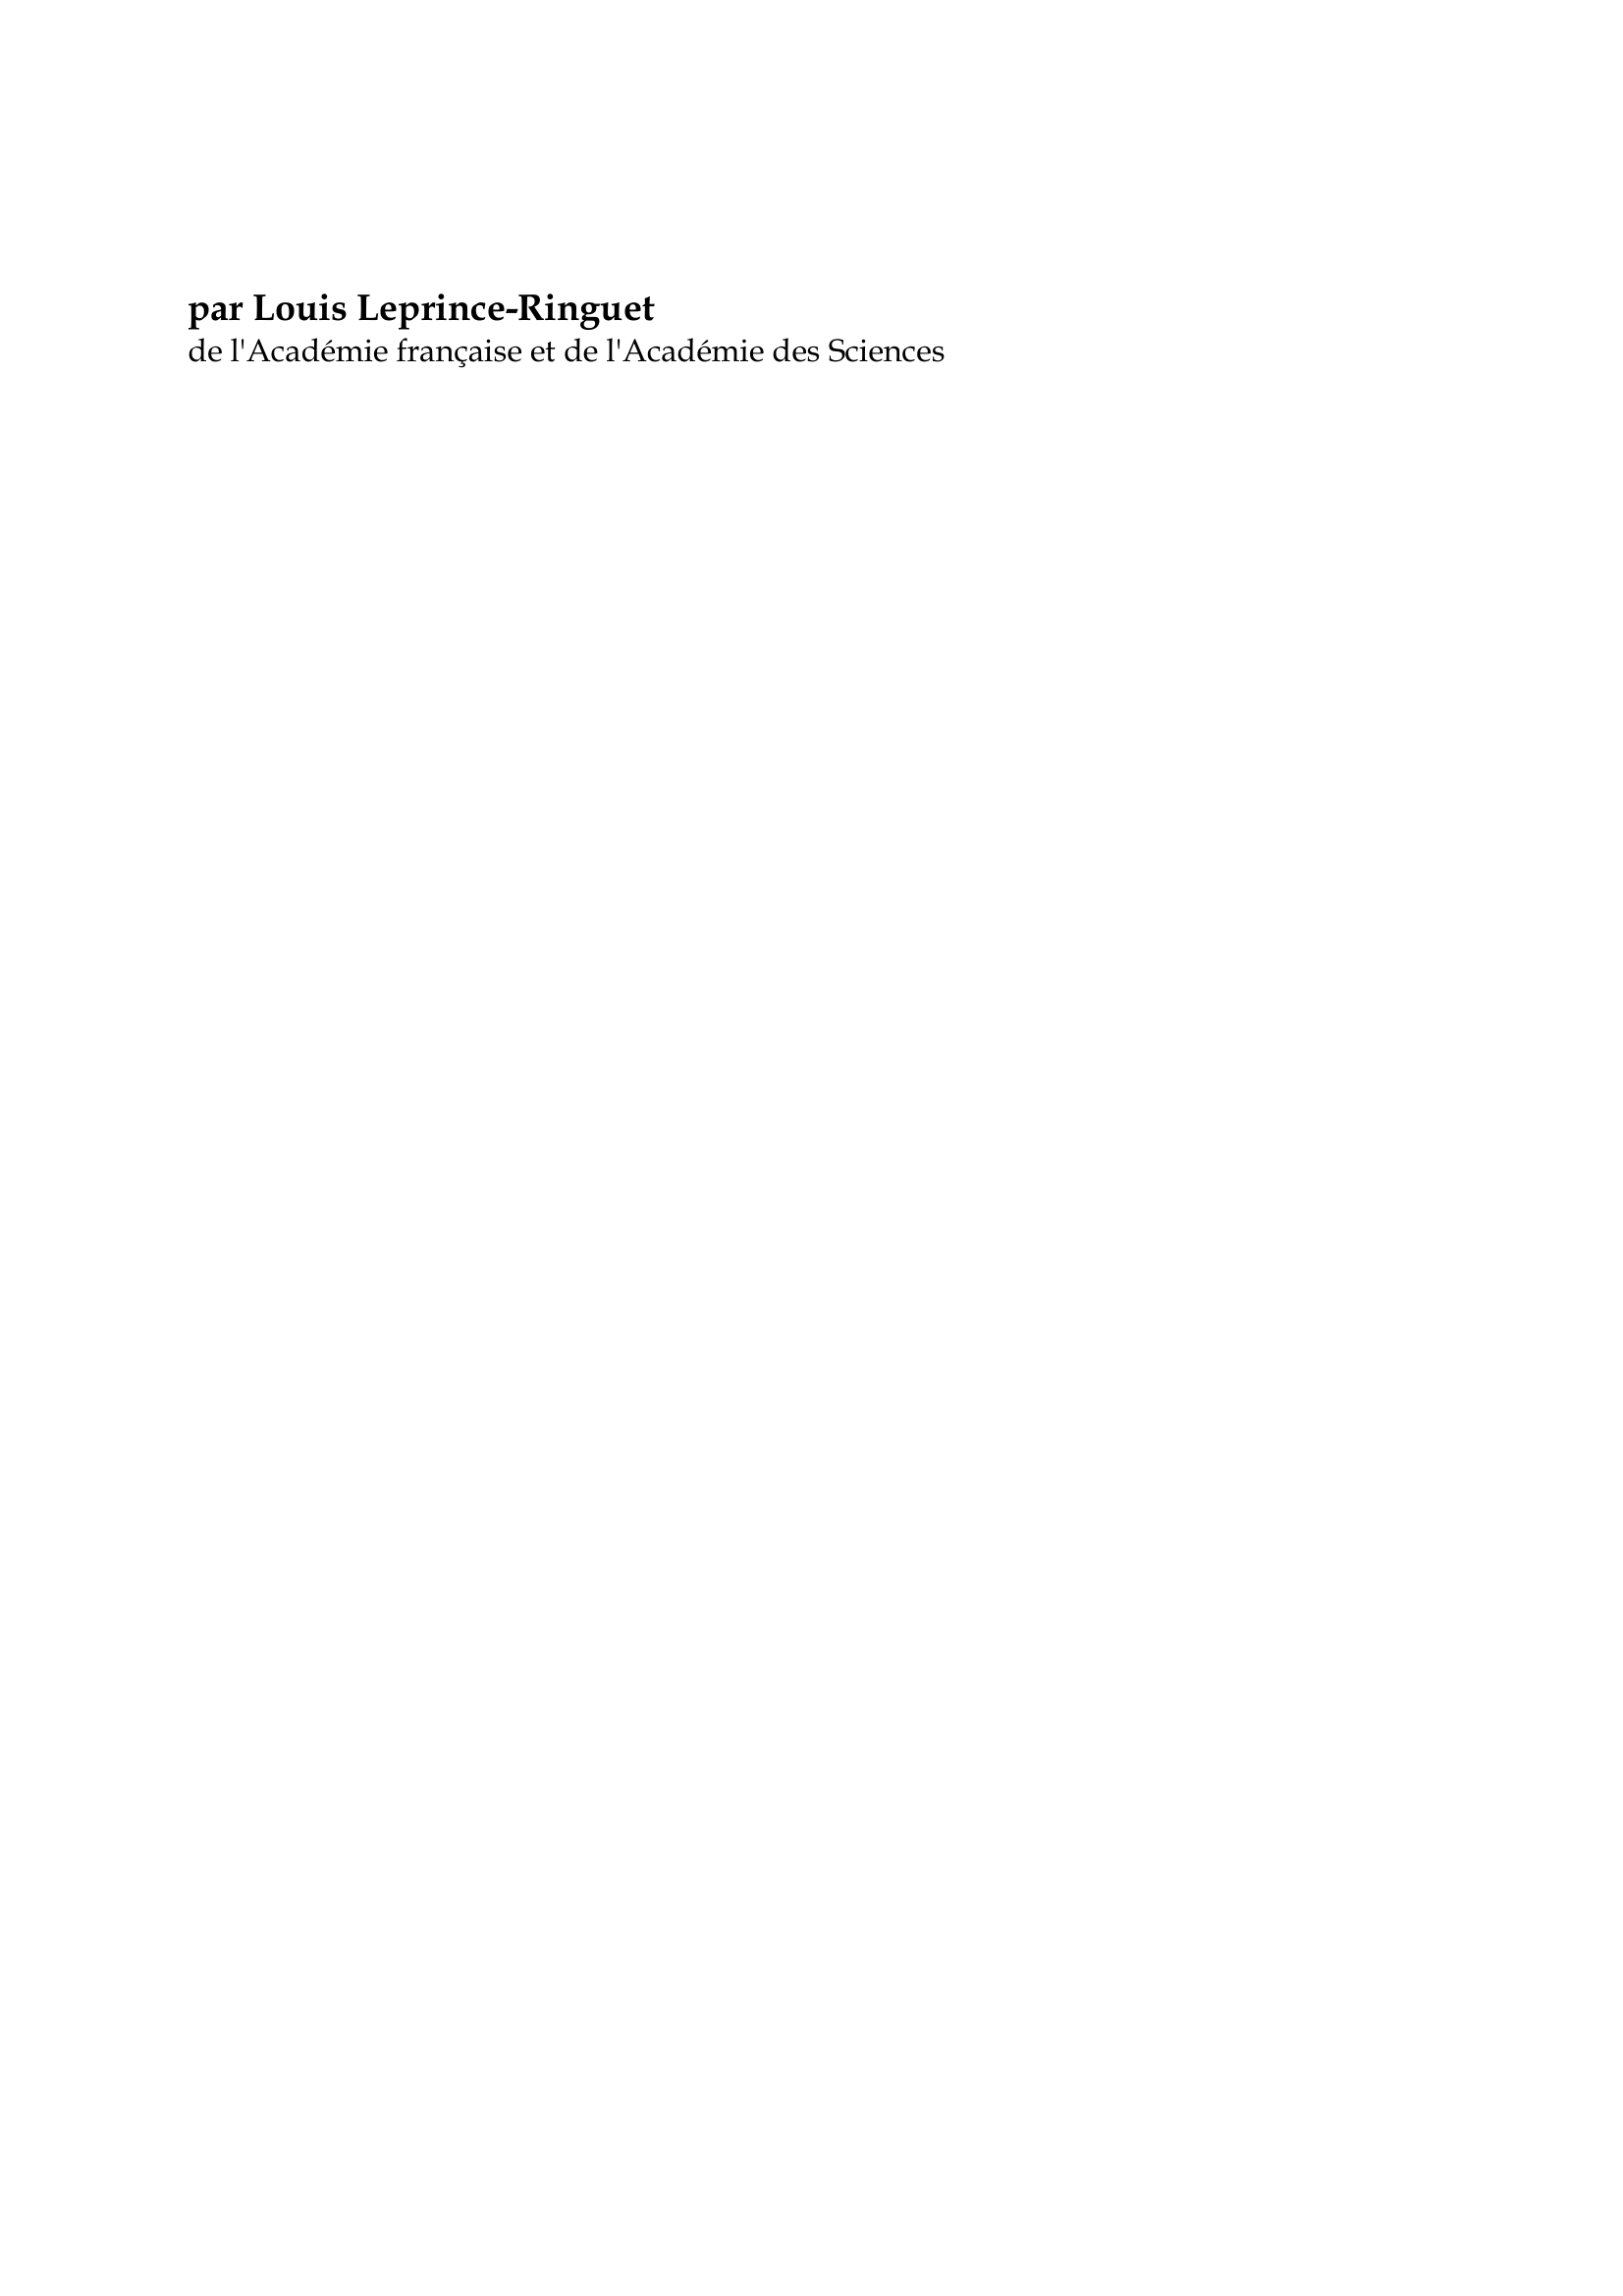 Prévisualisation du document Jules Verne

par Louis Leprince-Ringuet
de l'Académie française et de l'Académie des Sciences

" Ah !